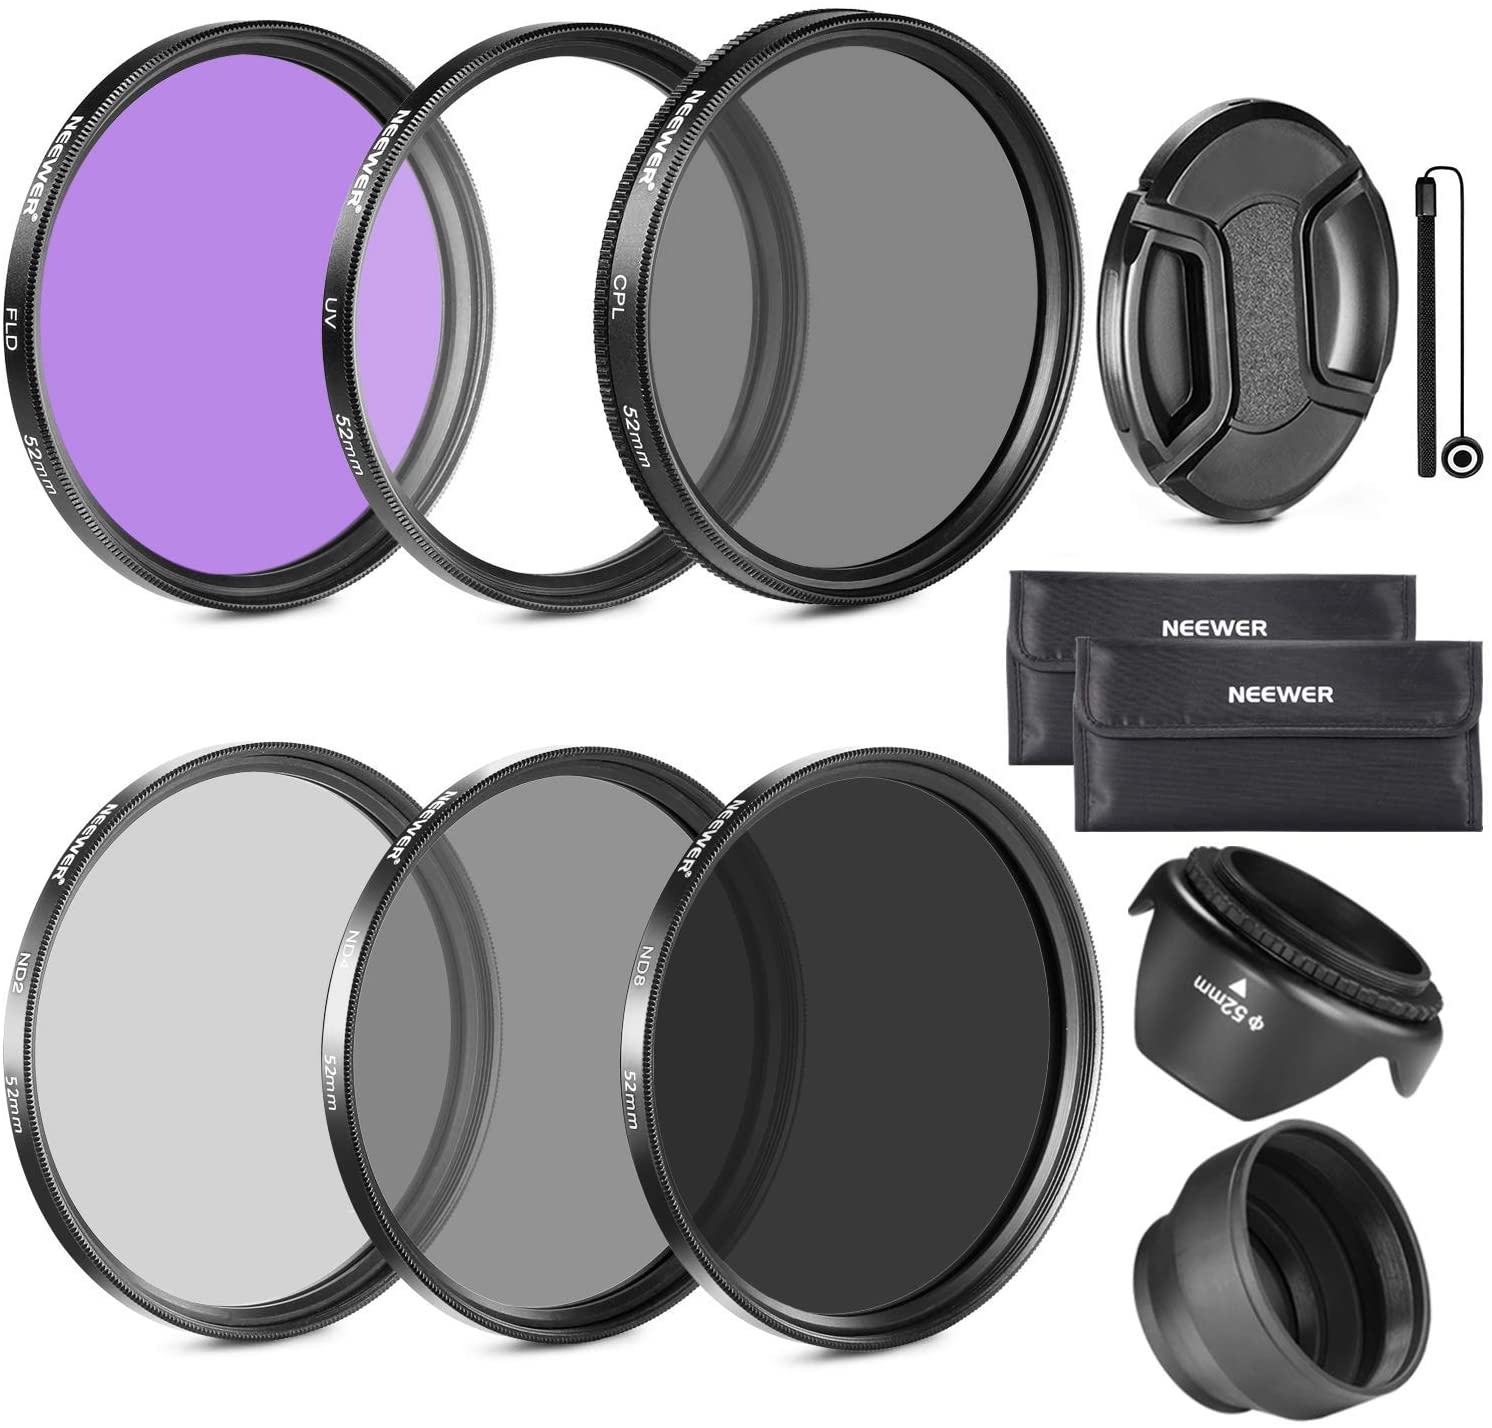 Jenis dan Kegunaan Dari Masing-masing Filter Lensa Kamera